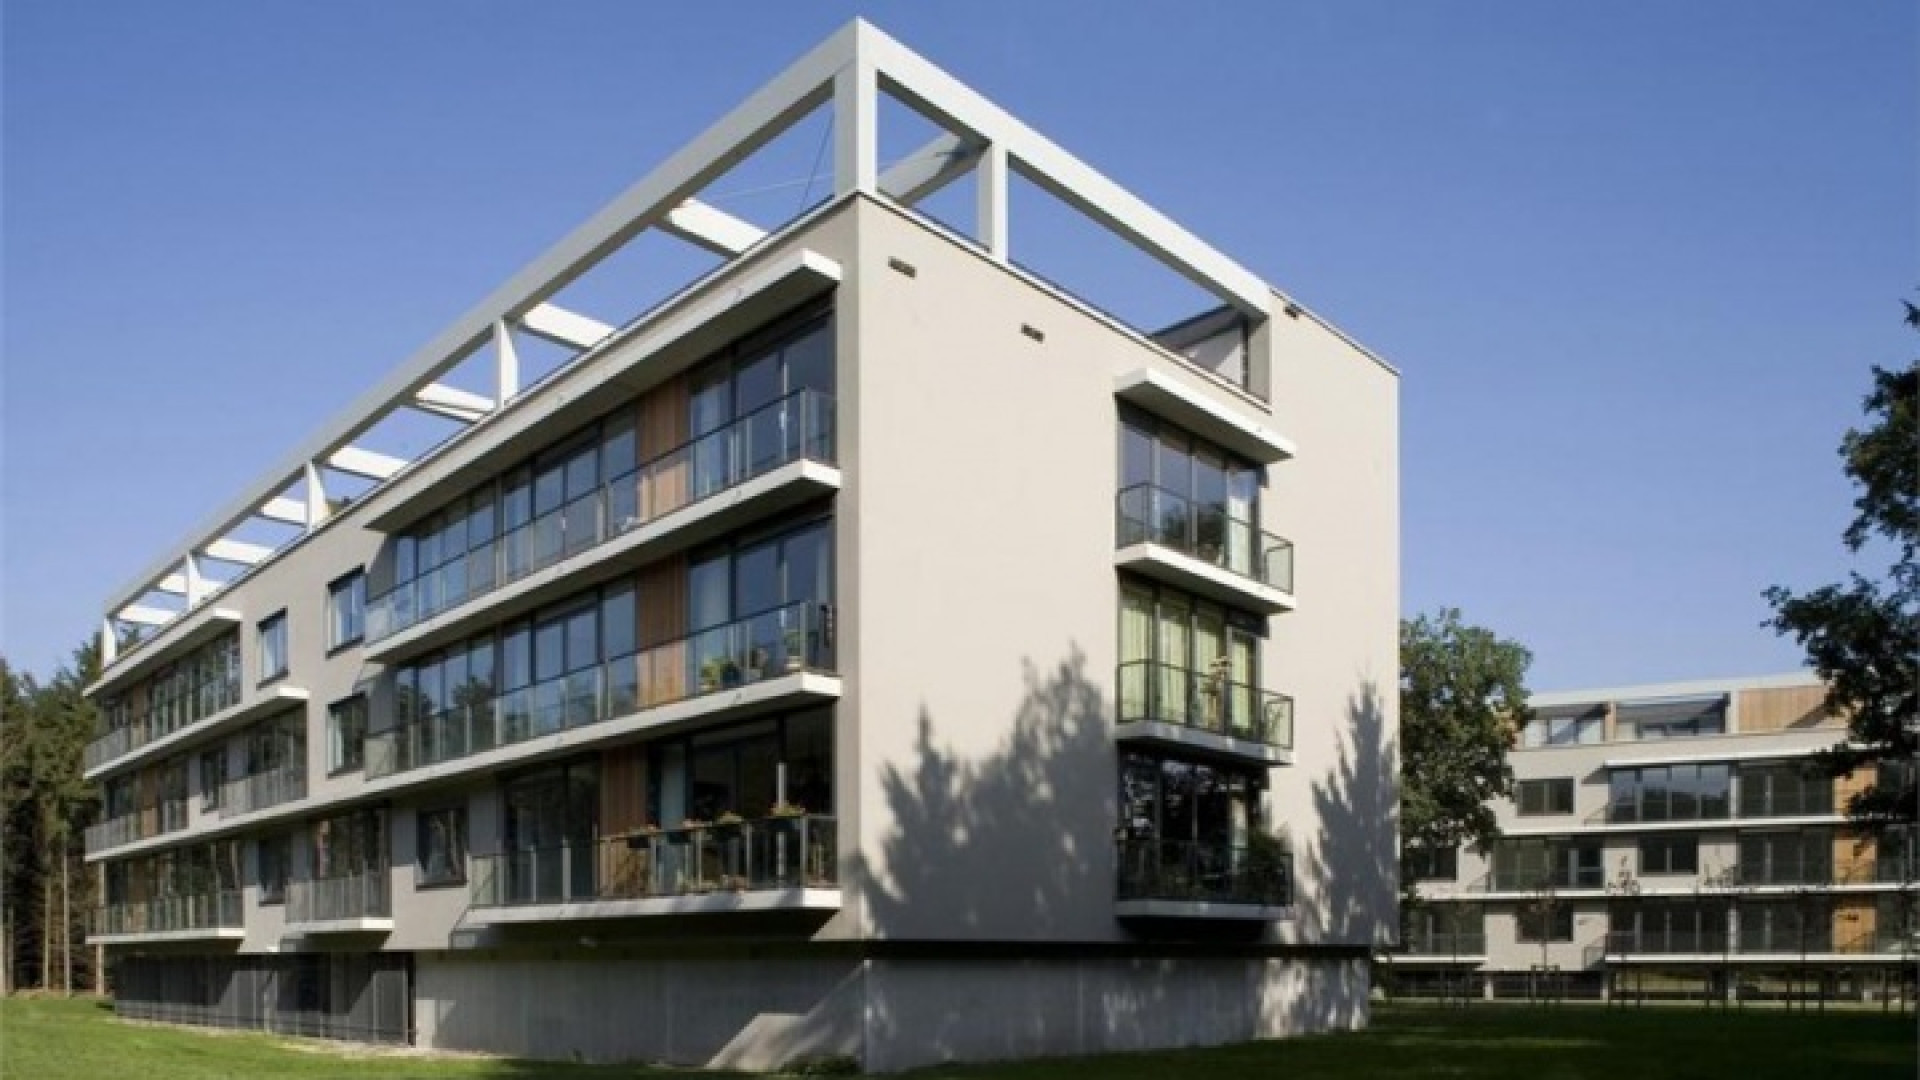 Ilse de Lange huurt luxe penthouse in Hilversum. Zie foto's 11